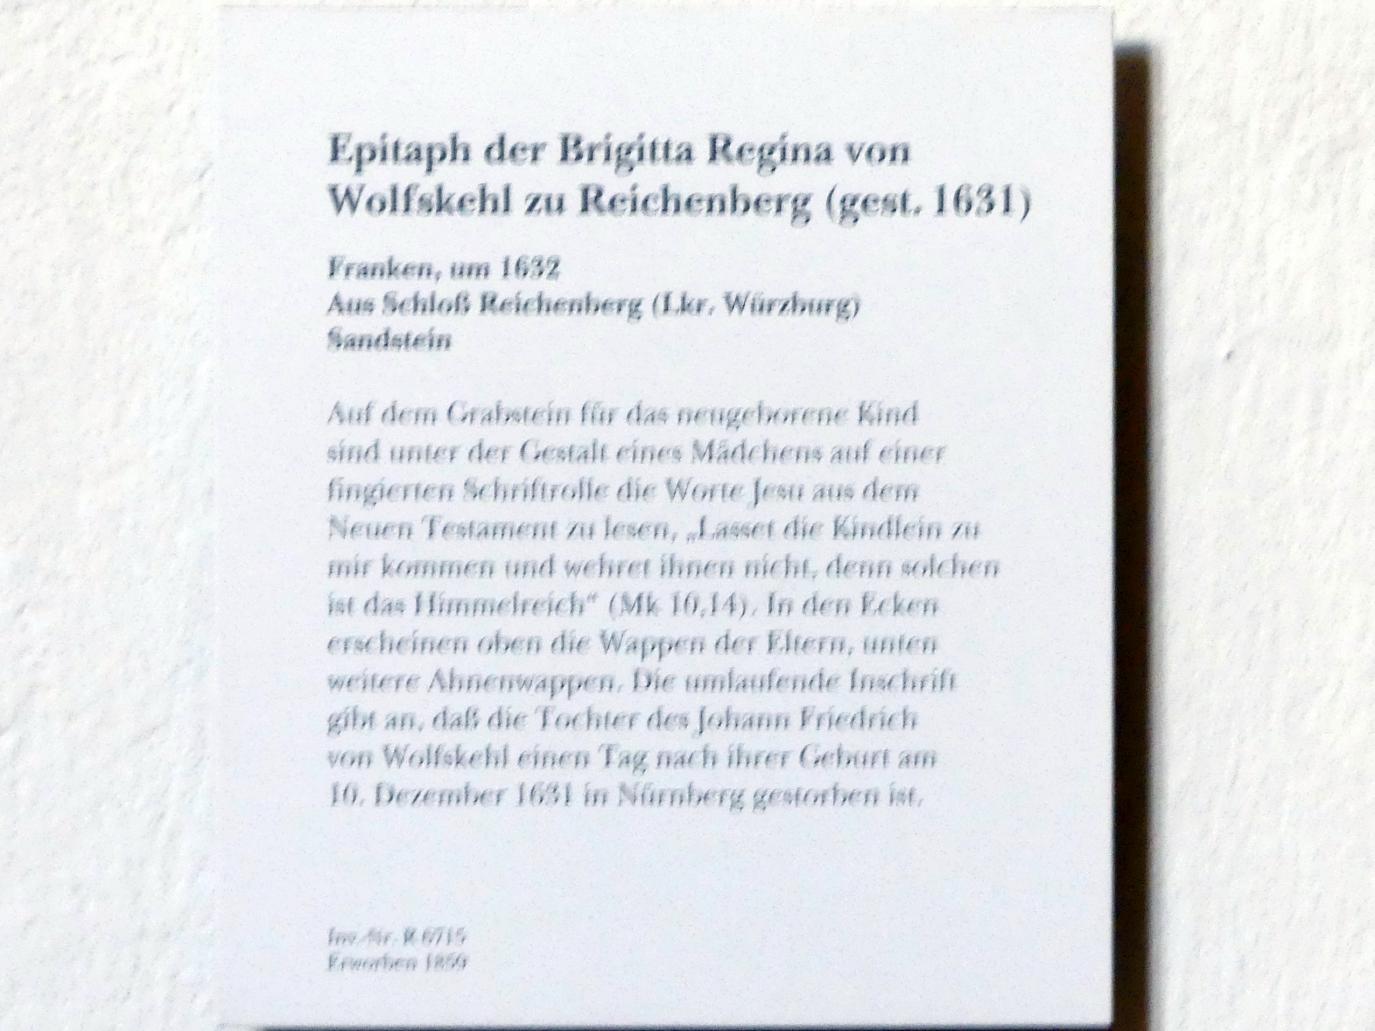 Epitaph der Brigitta Regina von Wolfskehl zu Reichenberg (gest. 1631), Reichenberg, Schloss Reichenberg, jetzt München, Bayerisches Nationalmuseum, Eingangshalle, um 1632, Bild 2/2